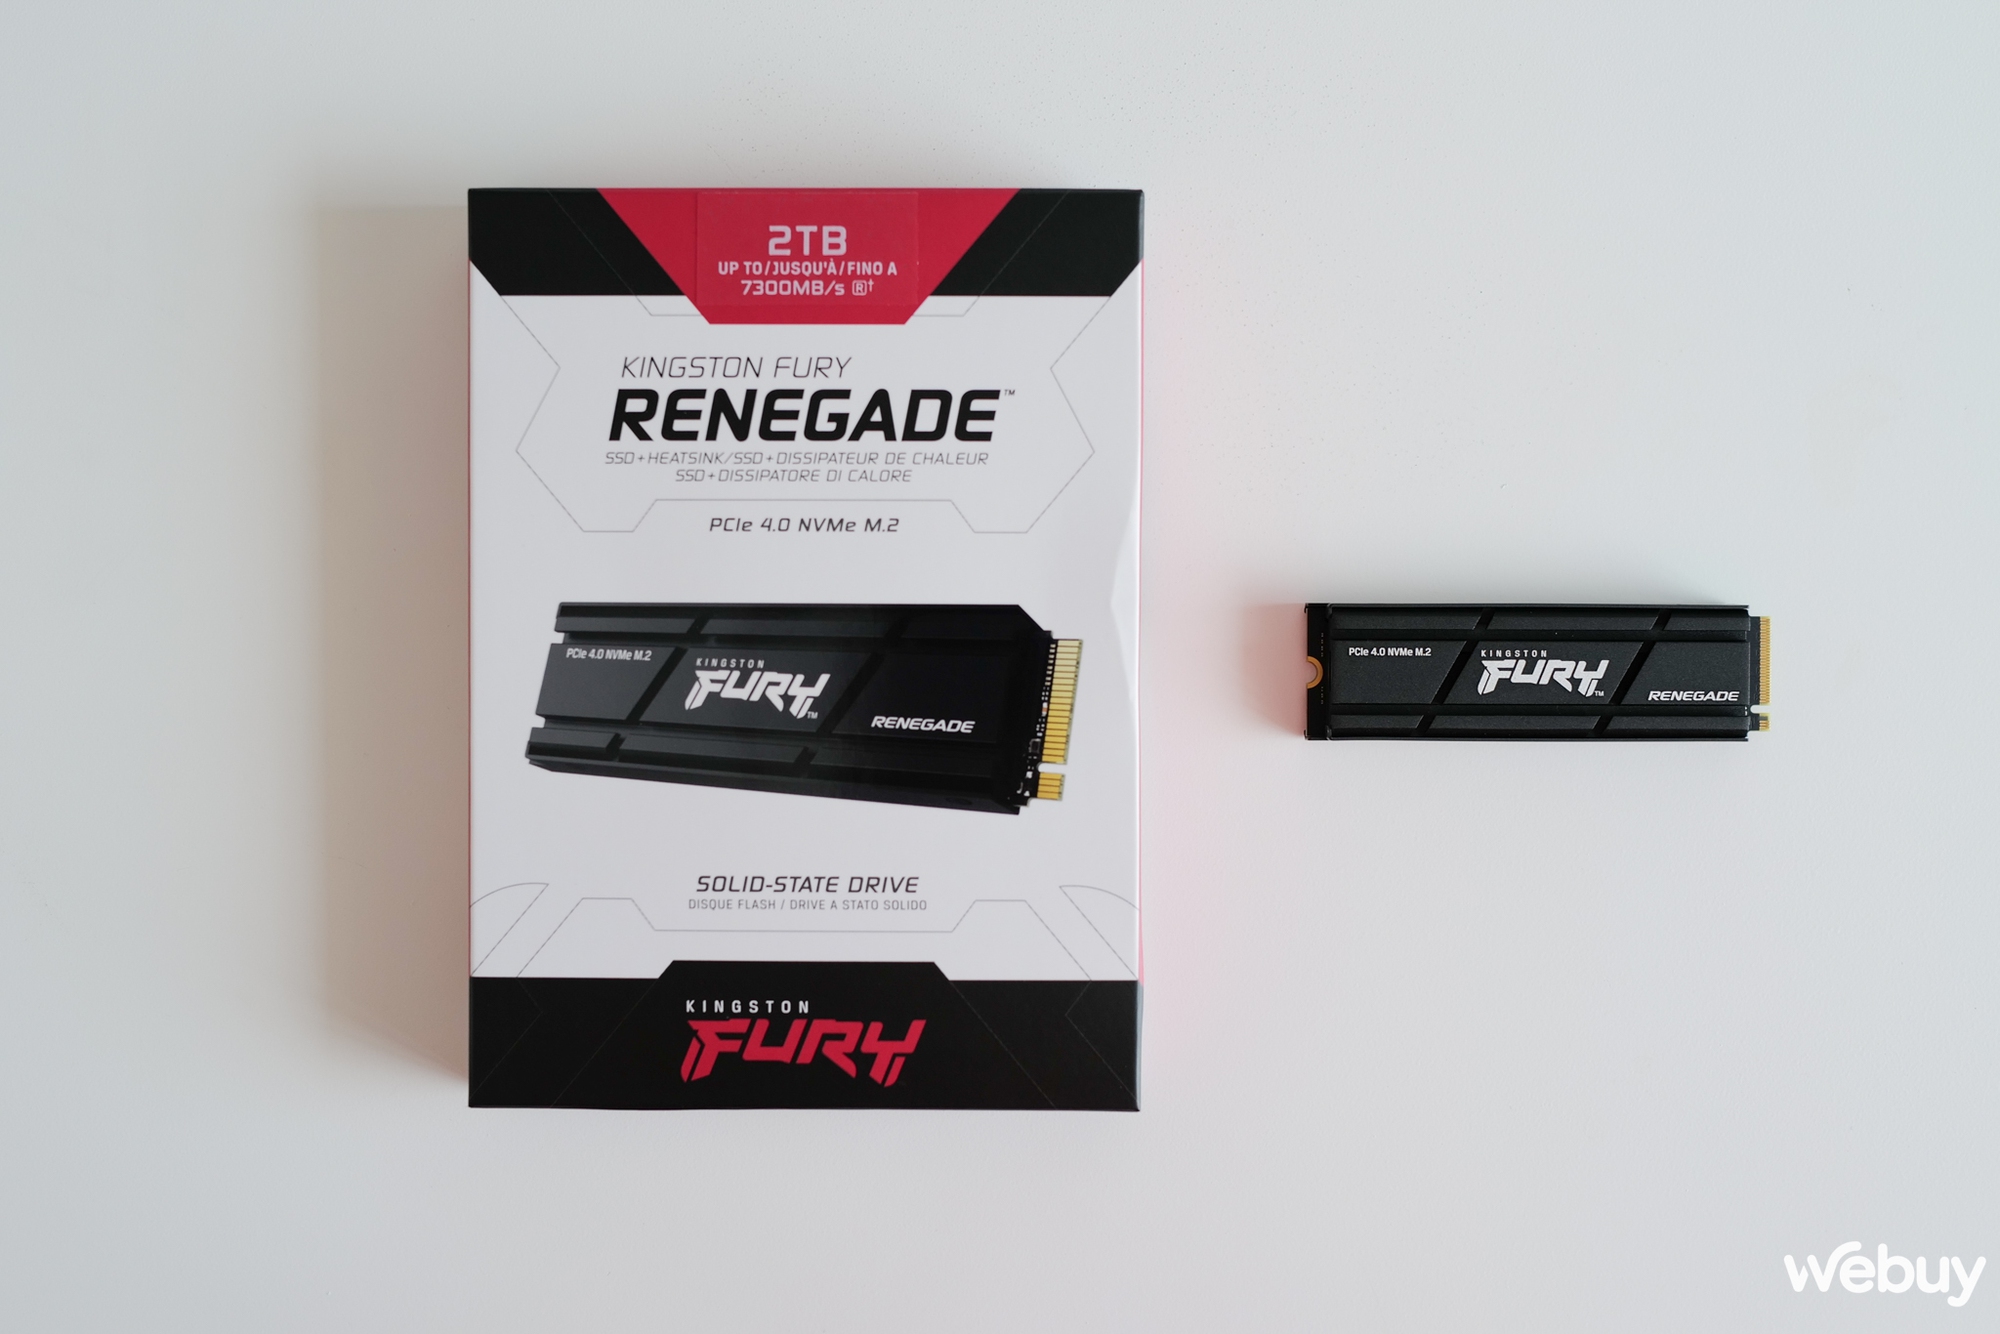 Trên tay SSD cao cấp Kingston Fury Renegade: PCIe 4.0 tốc độ cao, tích hợp sẵn cả tản nhiệt - Ảnh 4.